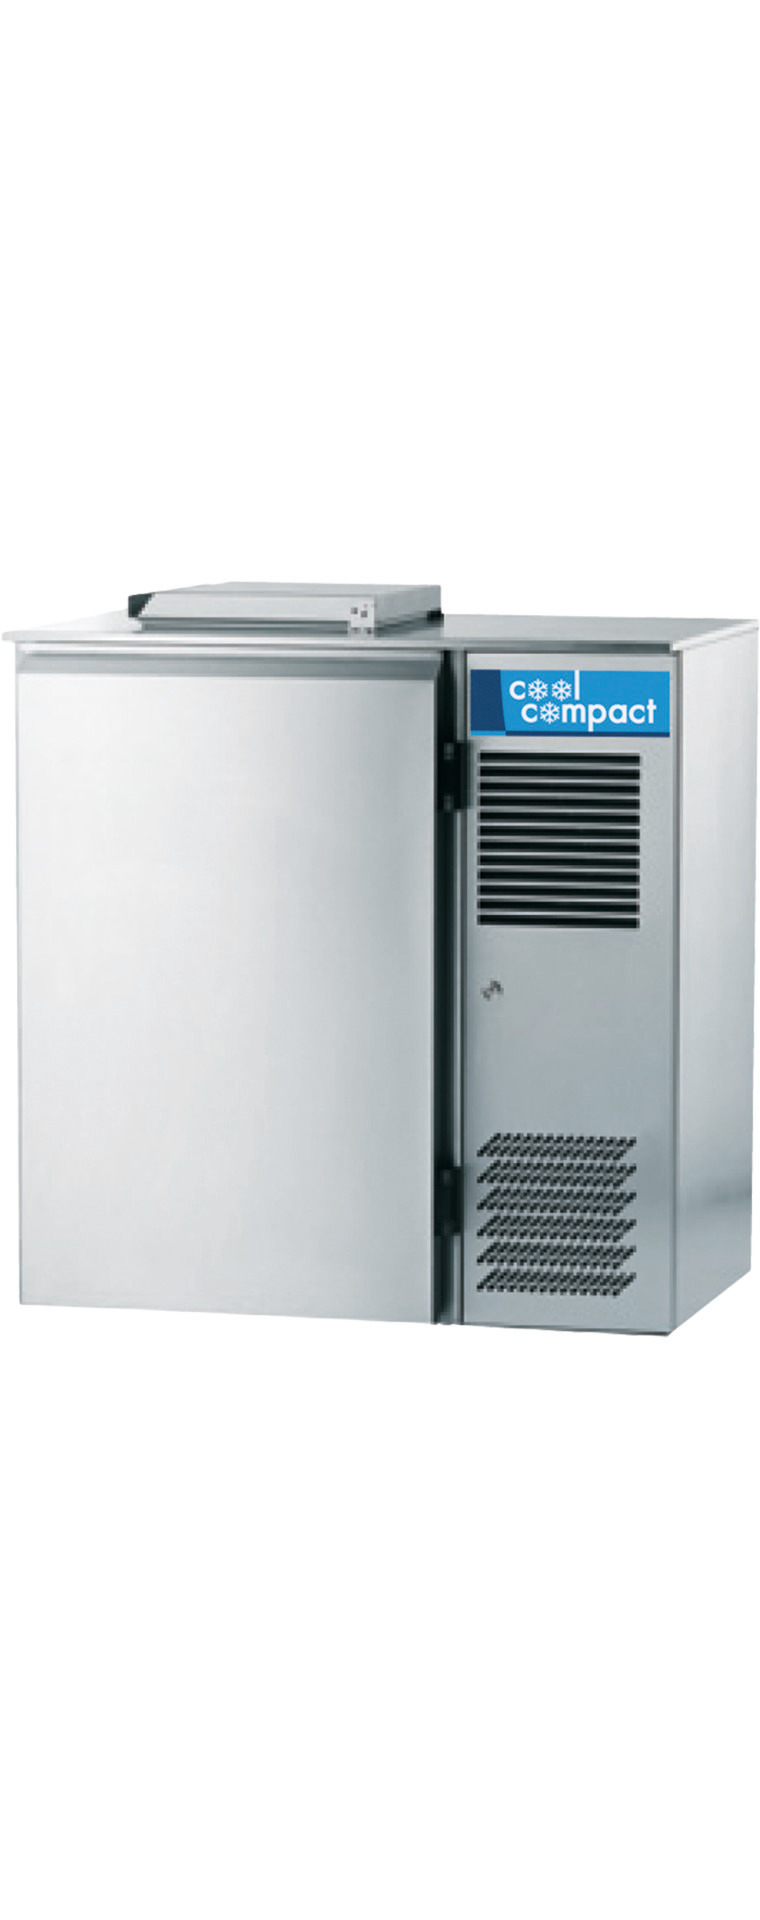 Abfallkühler für 1 x 120,00 l / 0,08 kW / zentralgekühlt